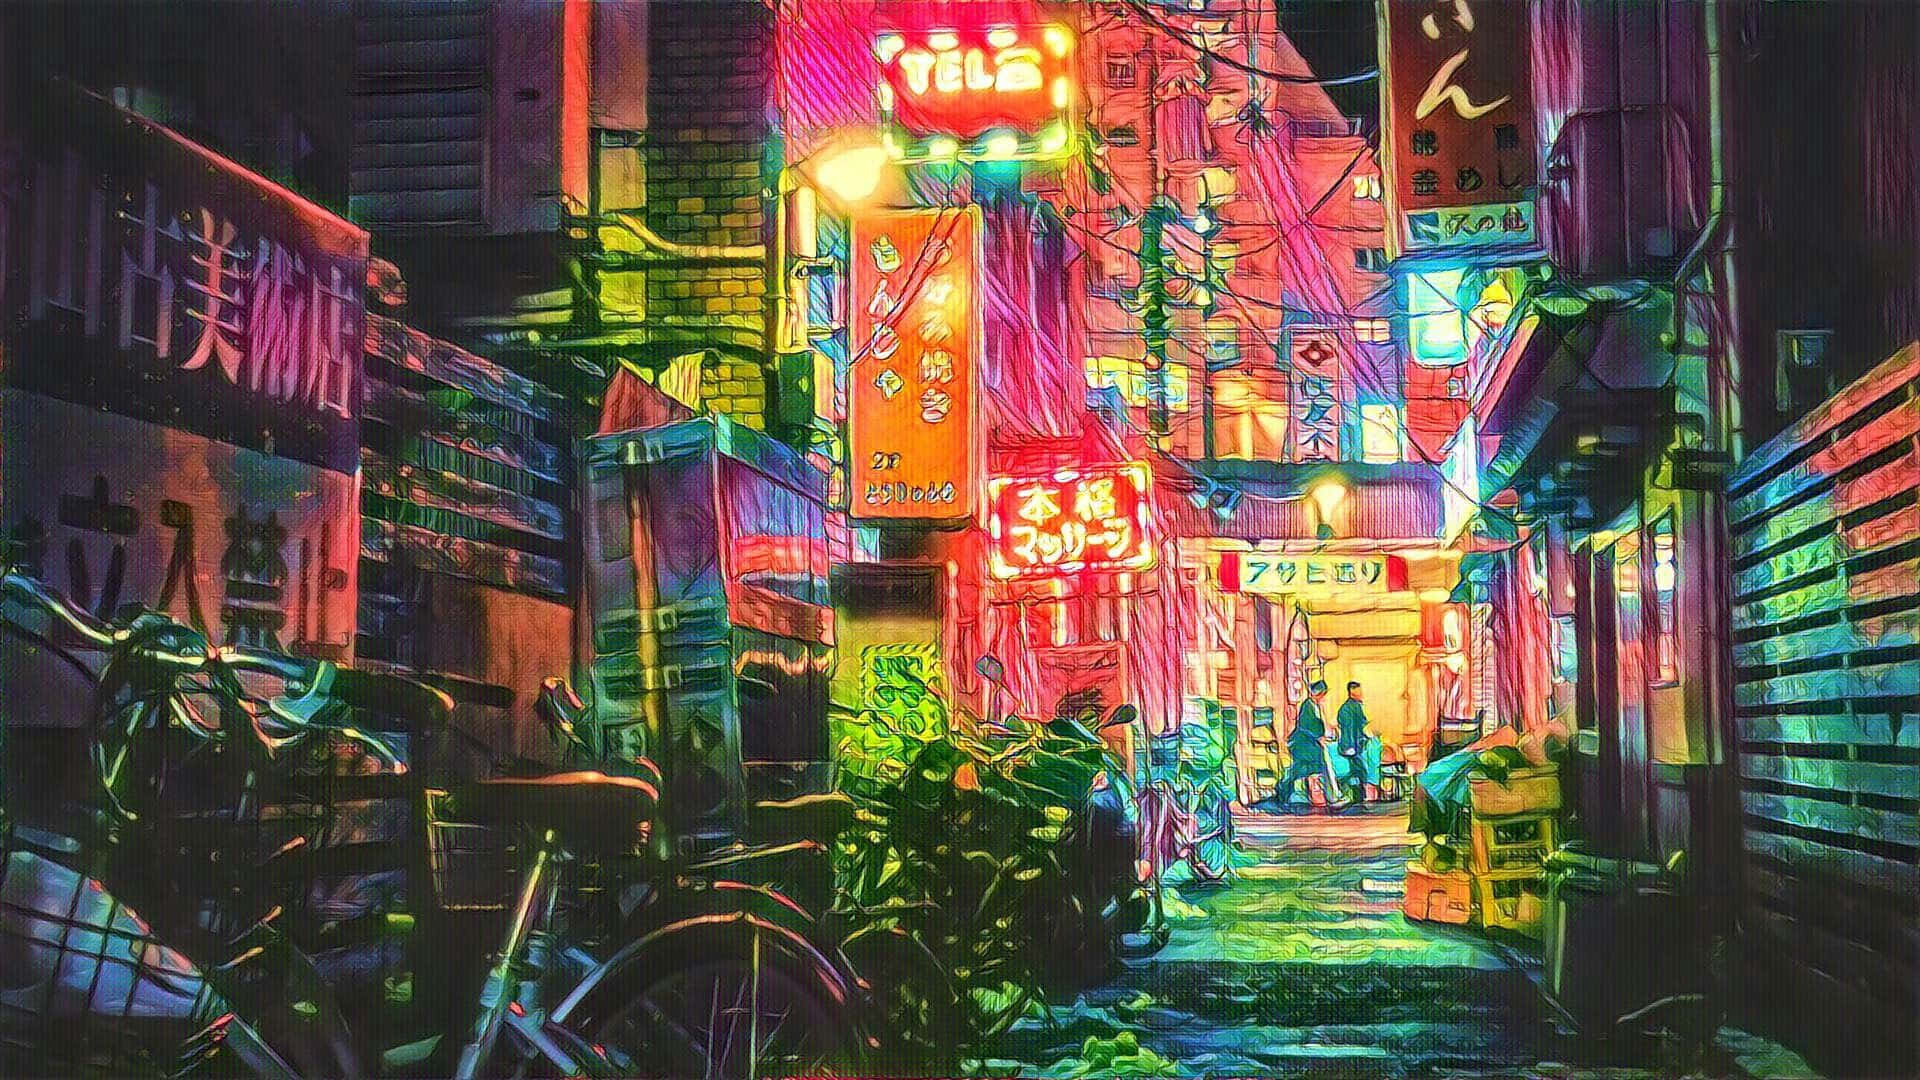 Hintergrundbildvon Einer Tokio Straße, Gefüllt Mit Fahrrädern